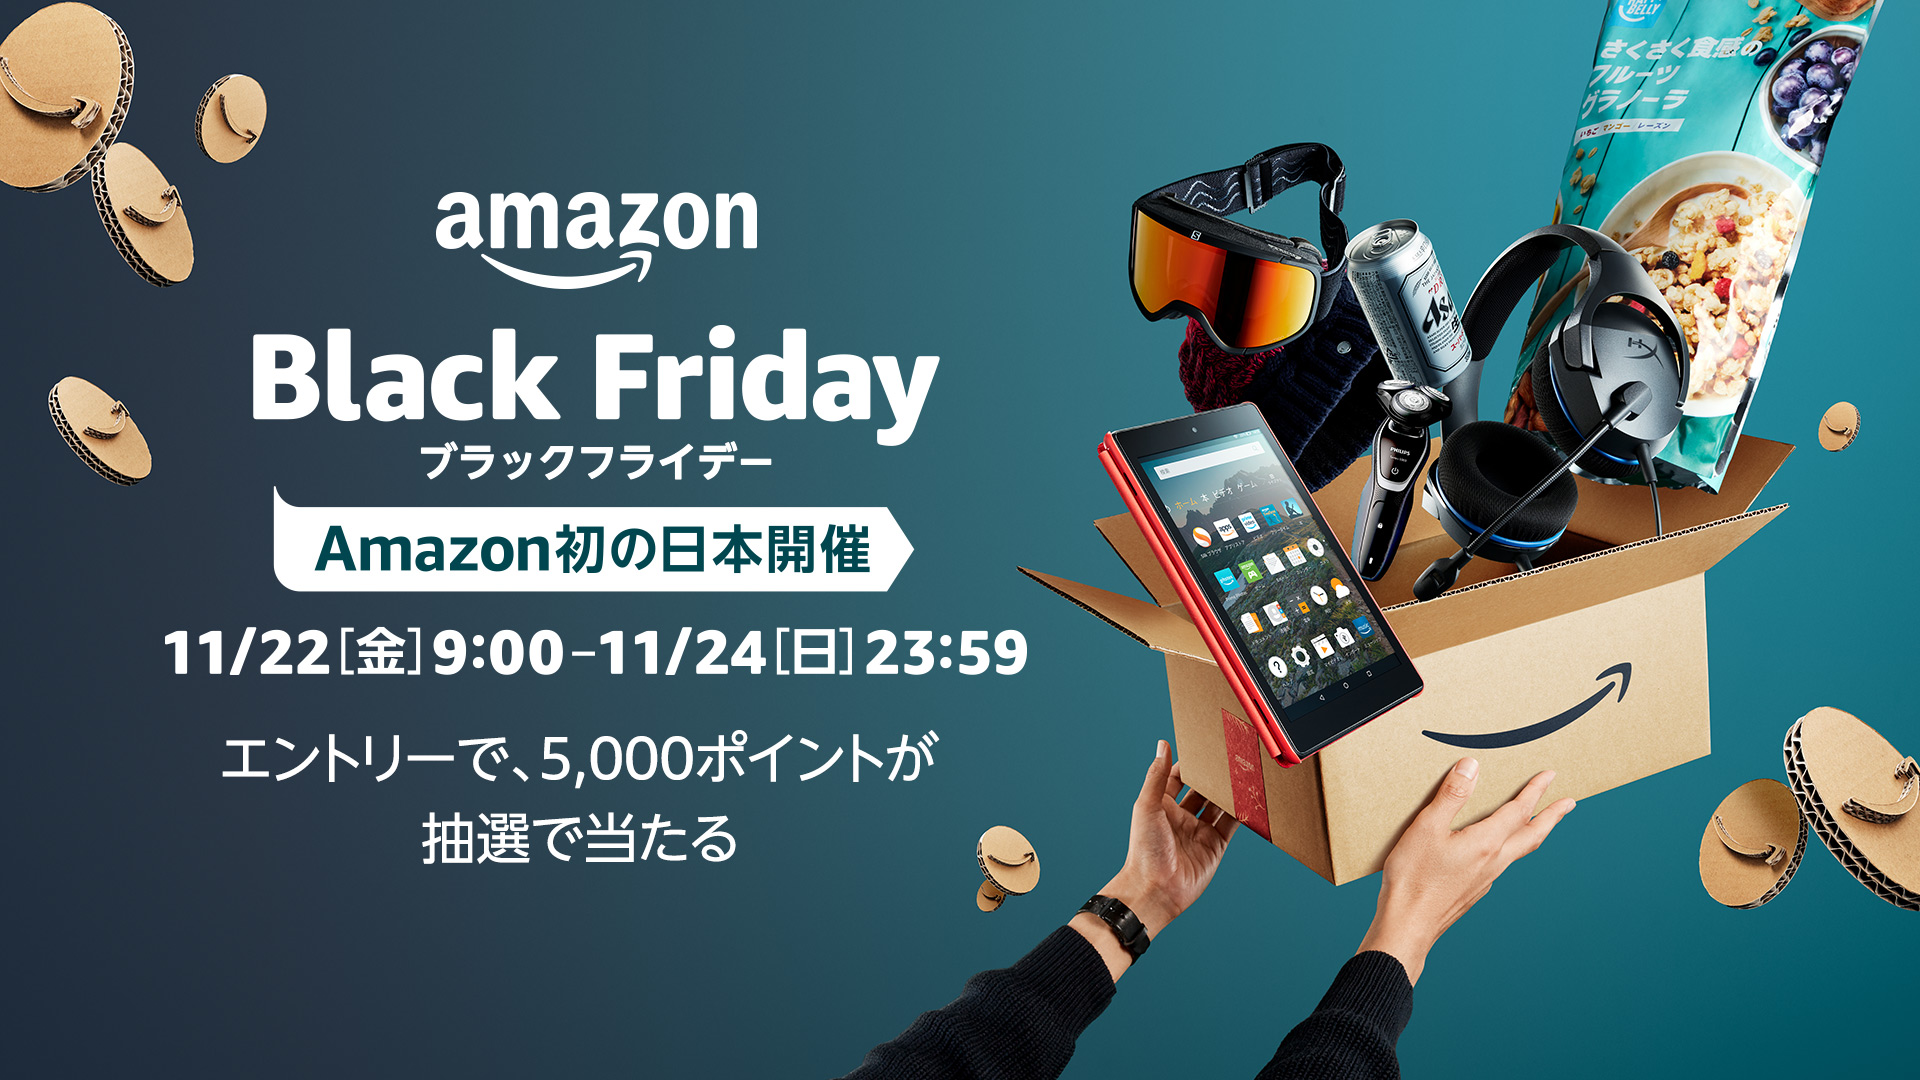 Amazonブラックフライデー を日本で初開催 アマゾンジャパン合同会社のプレスリリース